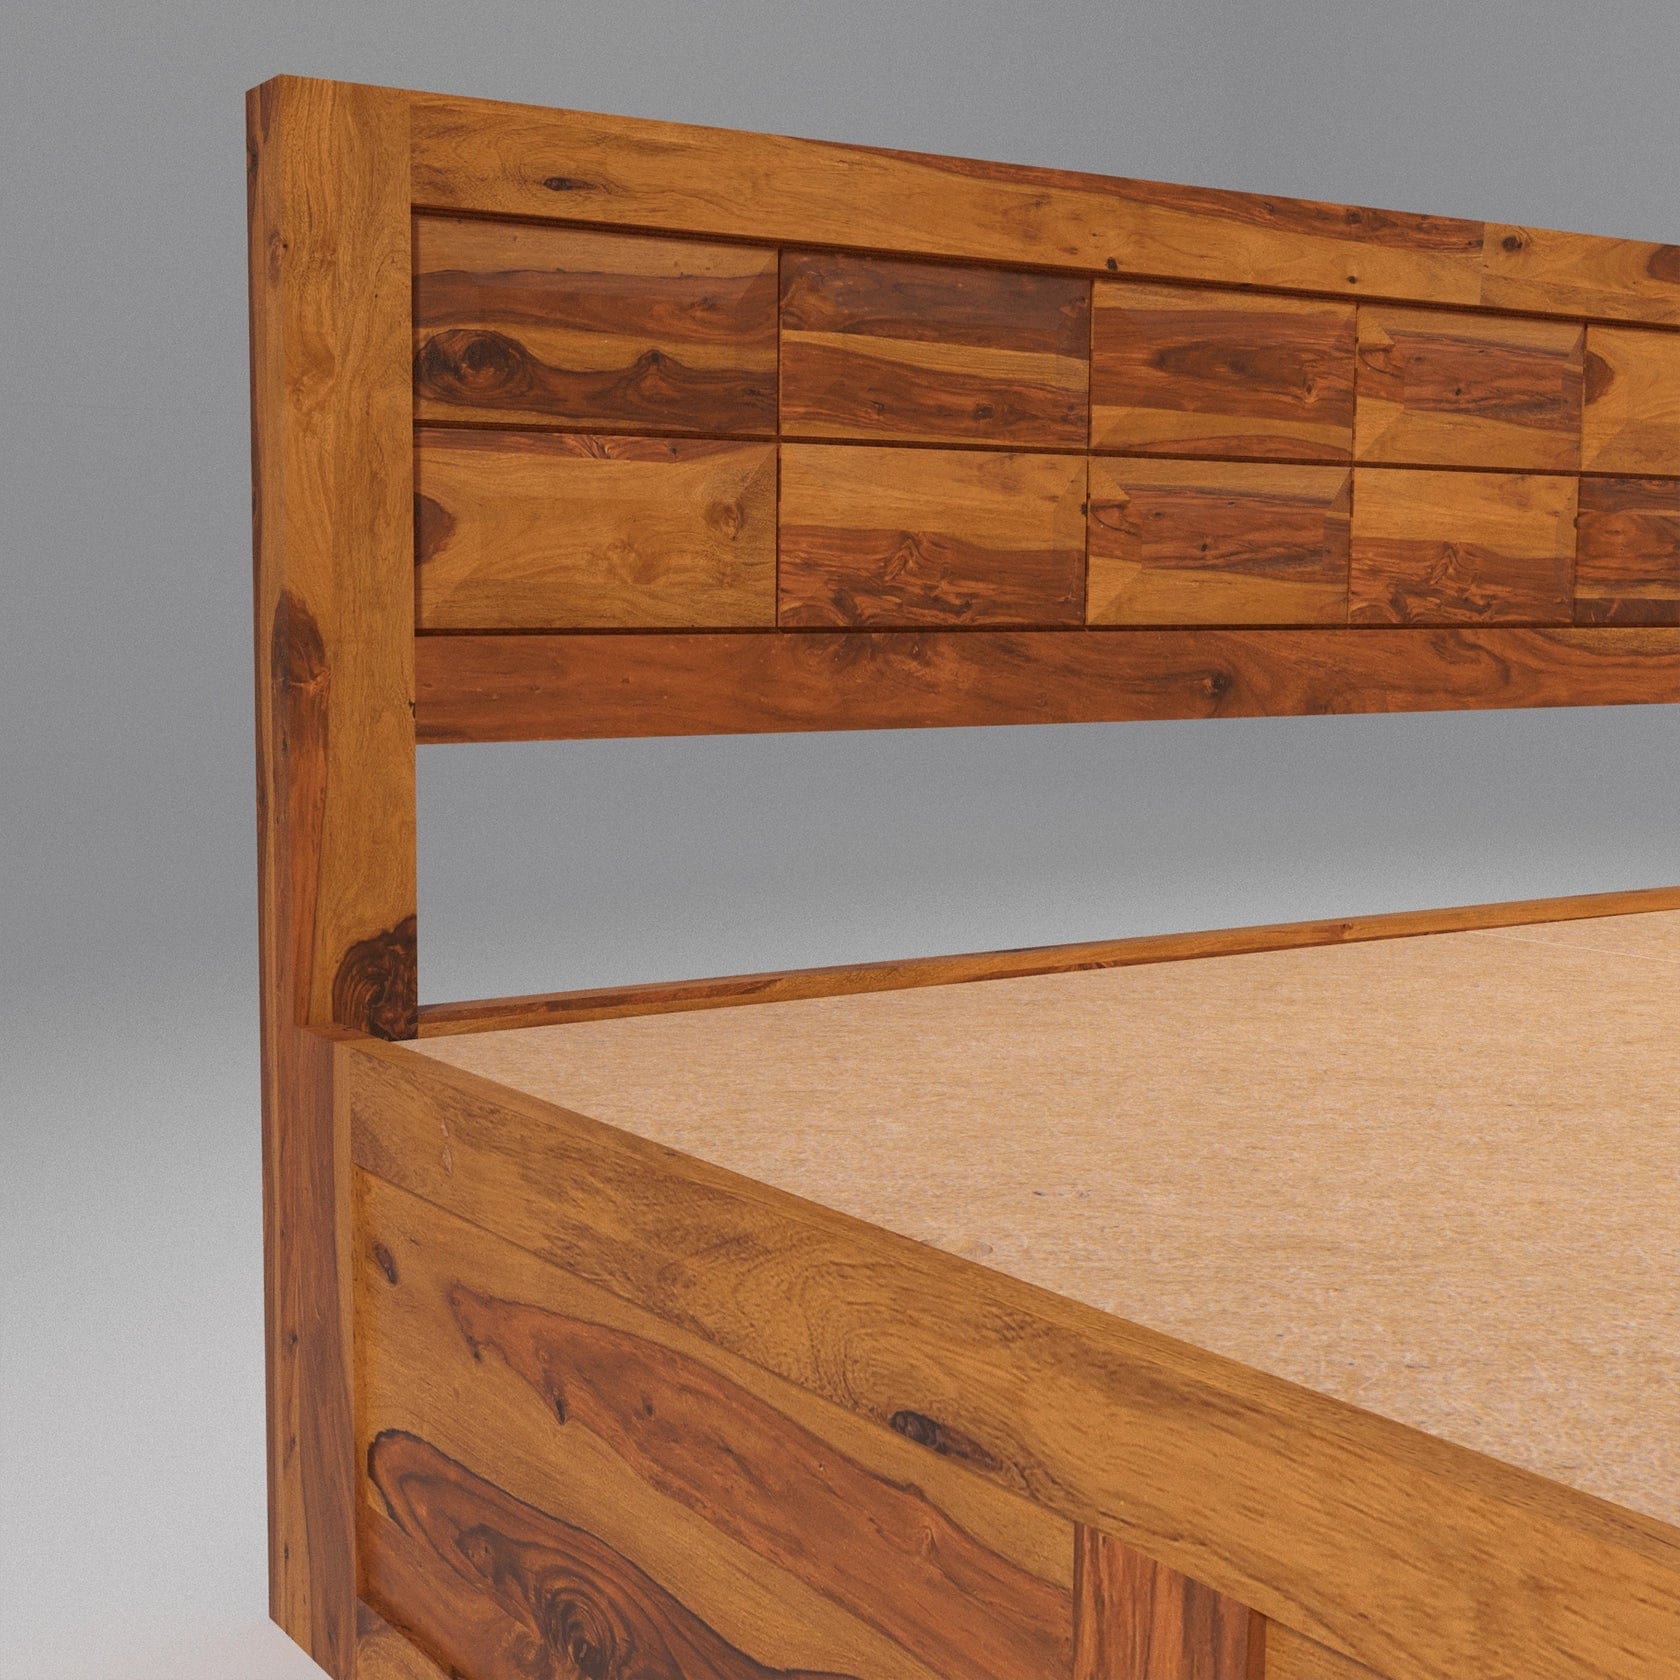 Arcadia Sheesham Wood King Size Bed with Storage